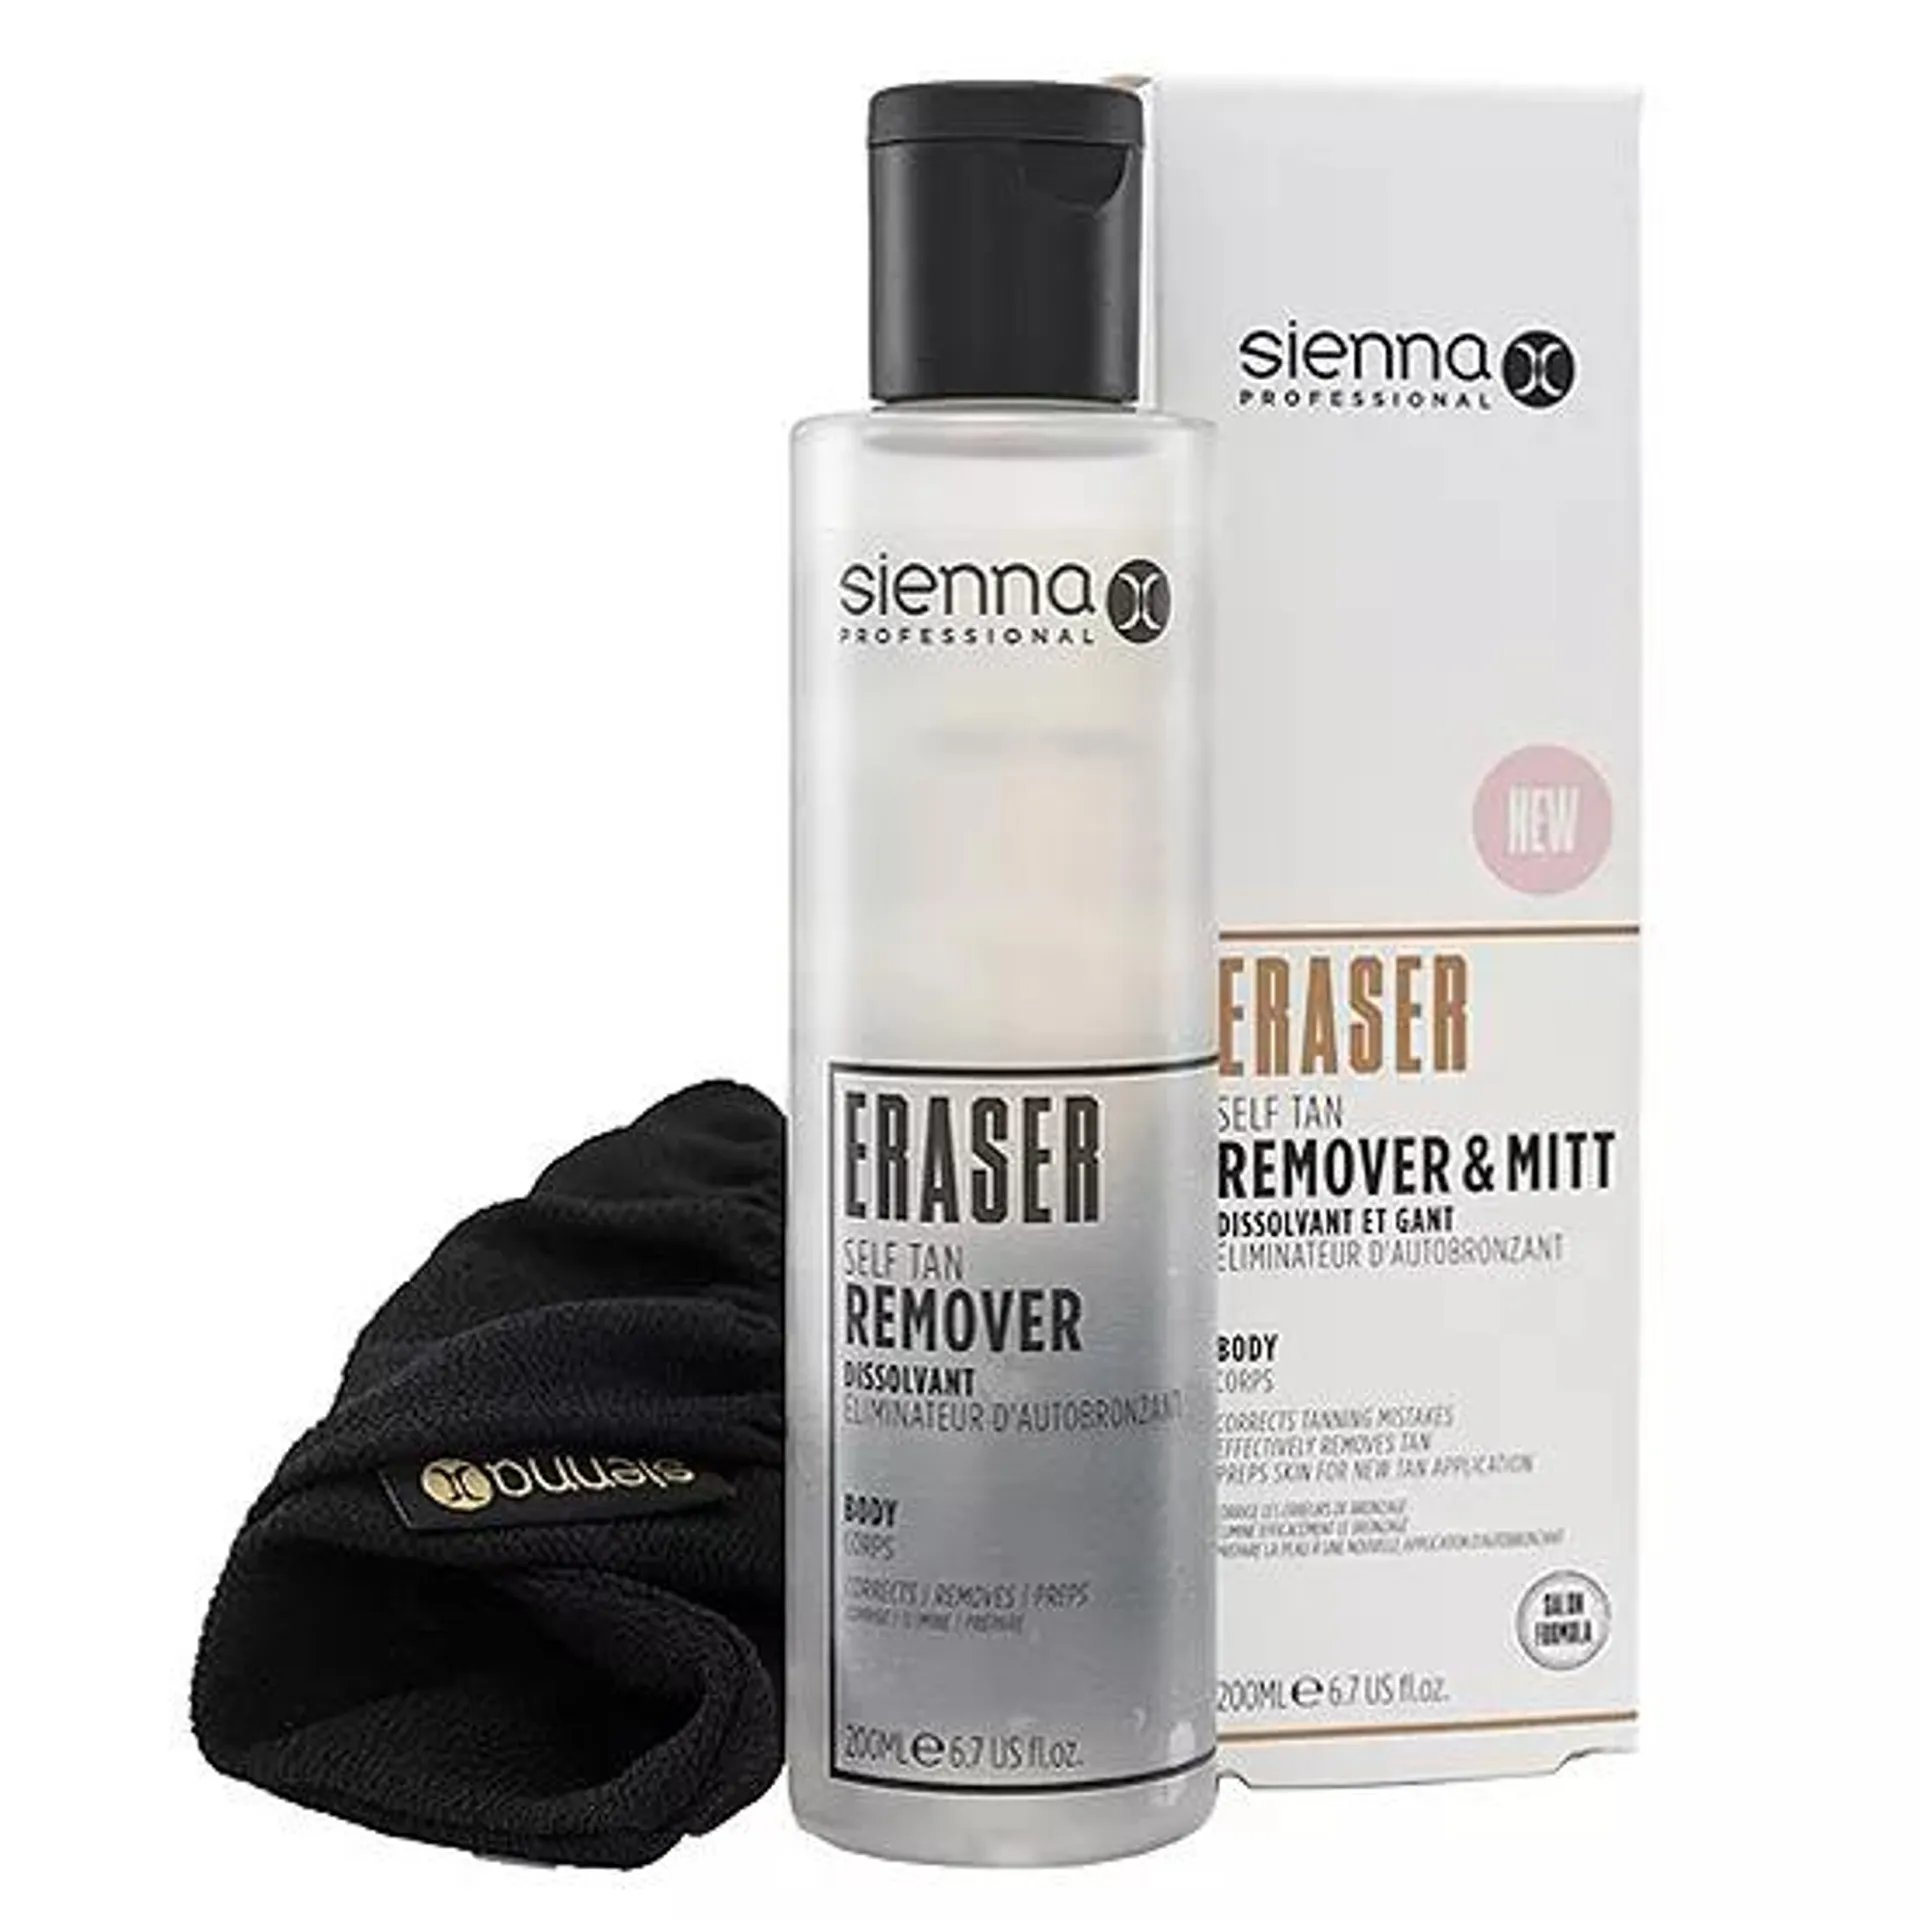 Sienna X Eraser Self Tan Remover & Mitt 200ml